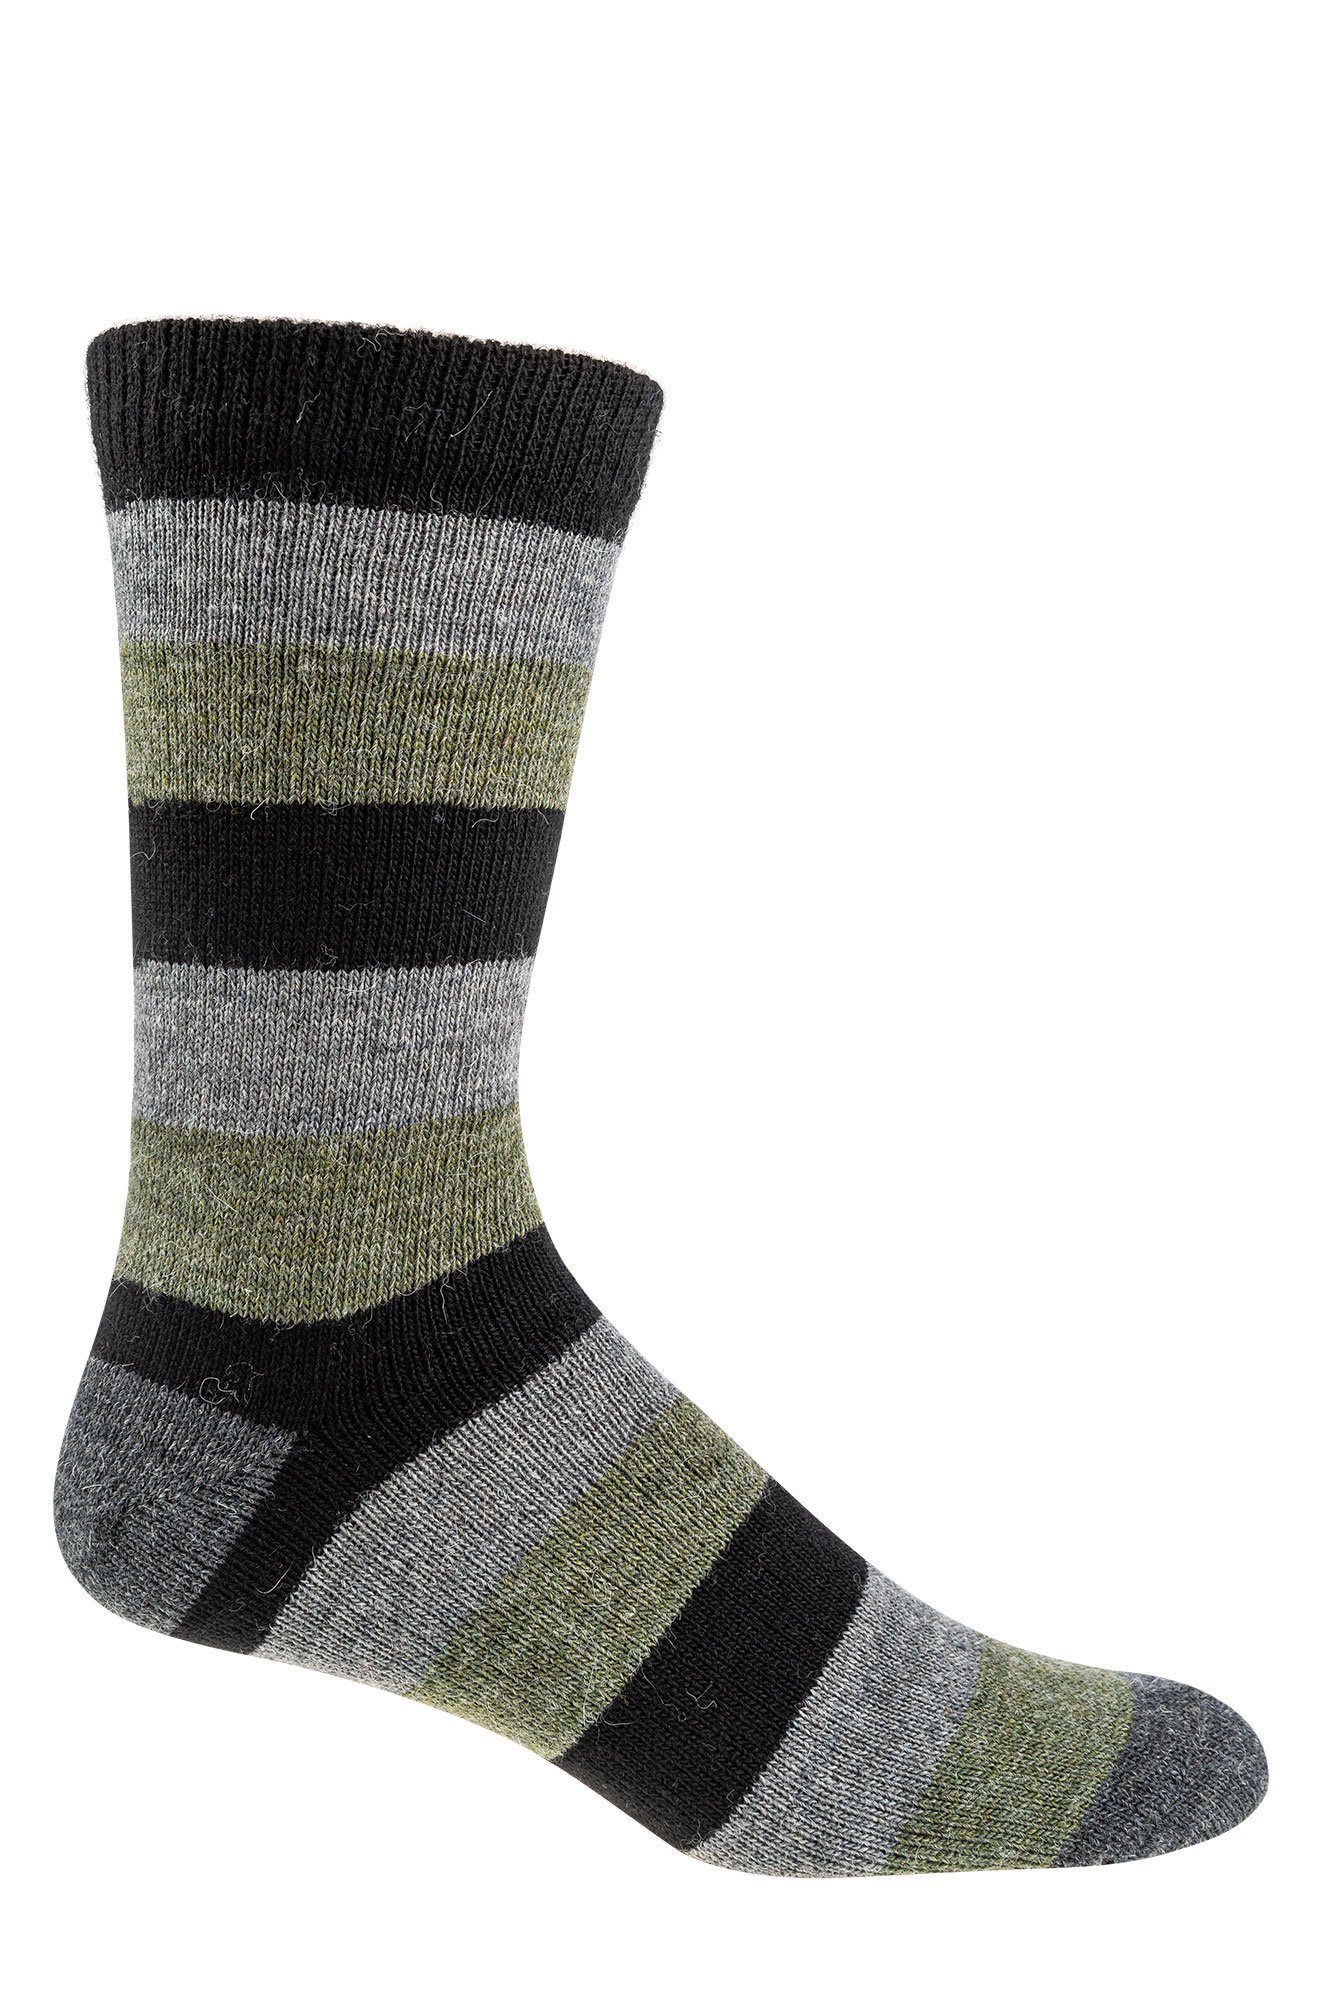 Socks 4 Basicsocken Naturfarben gestreifte Warme Alpaka mit Fun Paar) und Wollsocken Schafwolle Wowerat (3